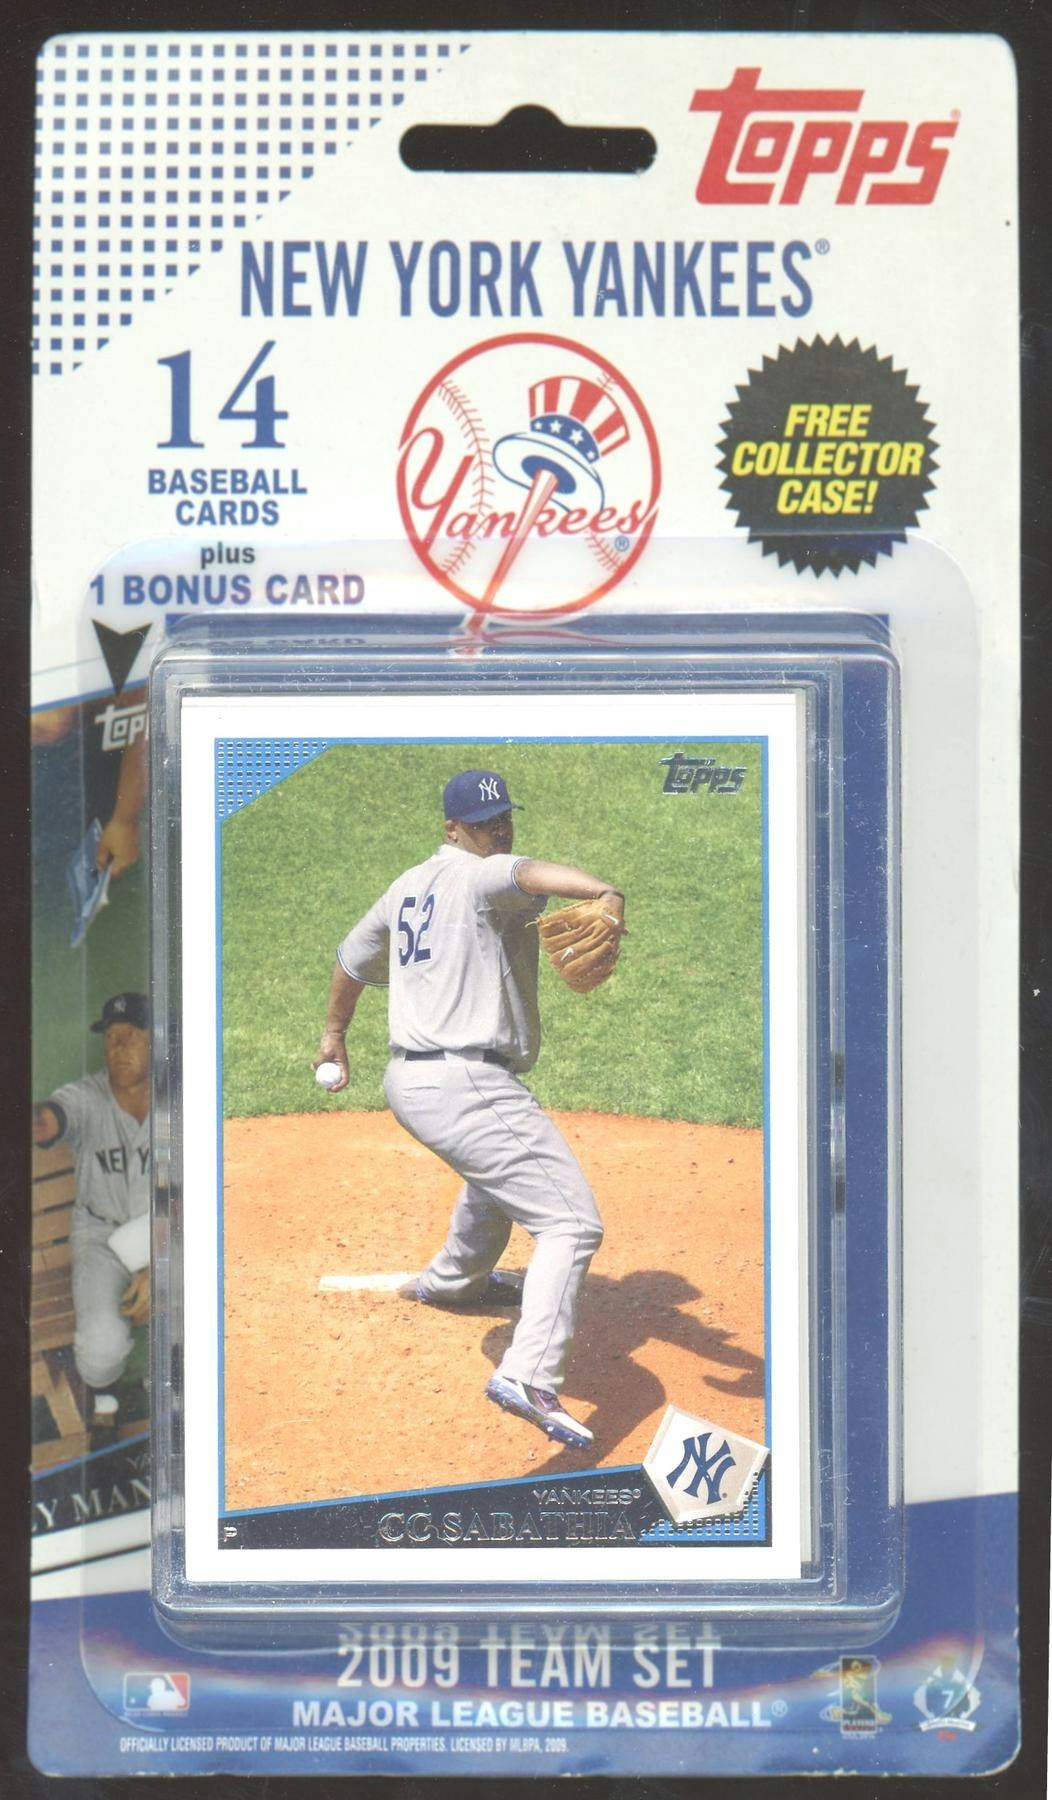 Mark Teixeira player worn jersey patch baseball card (New York